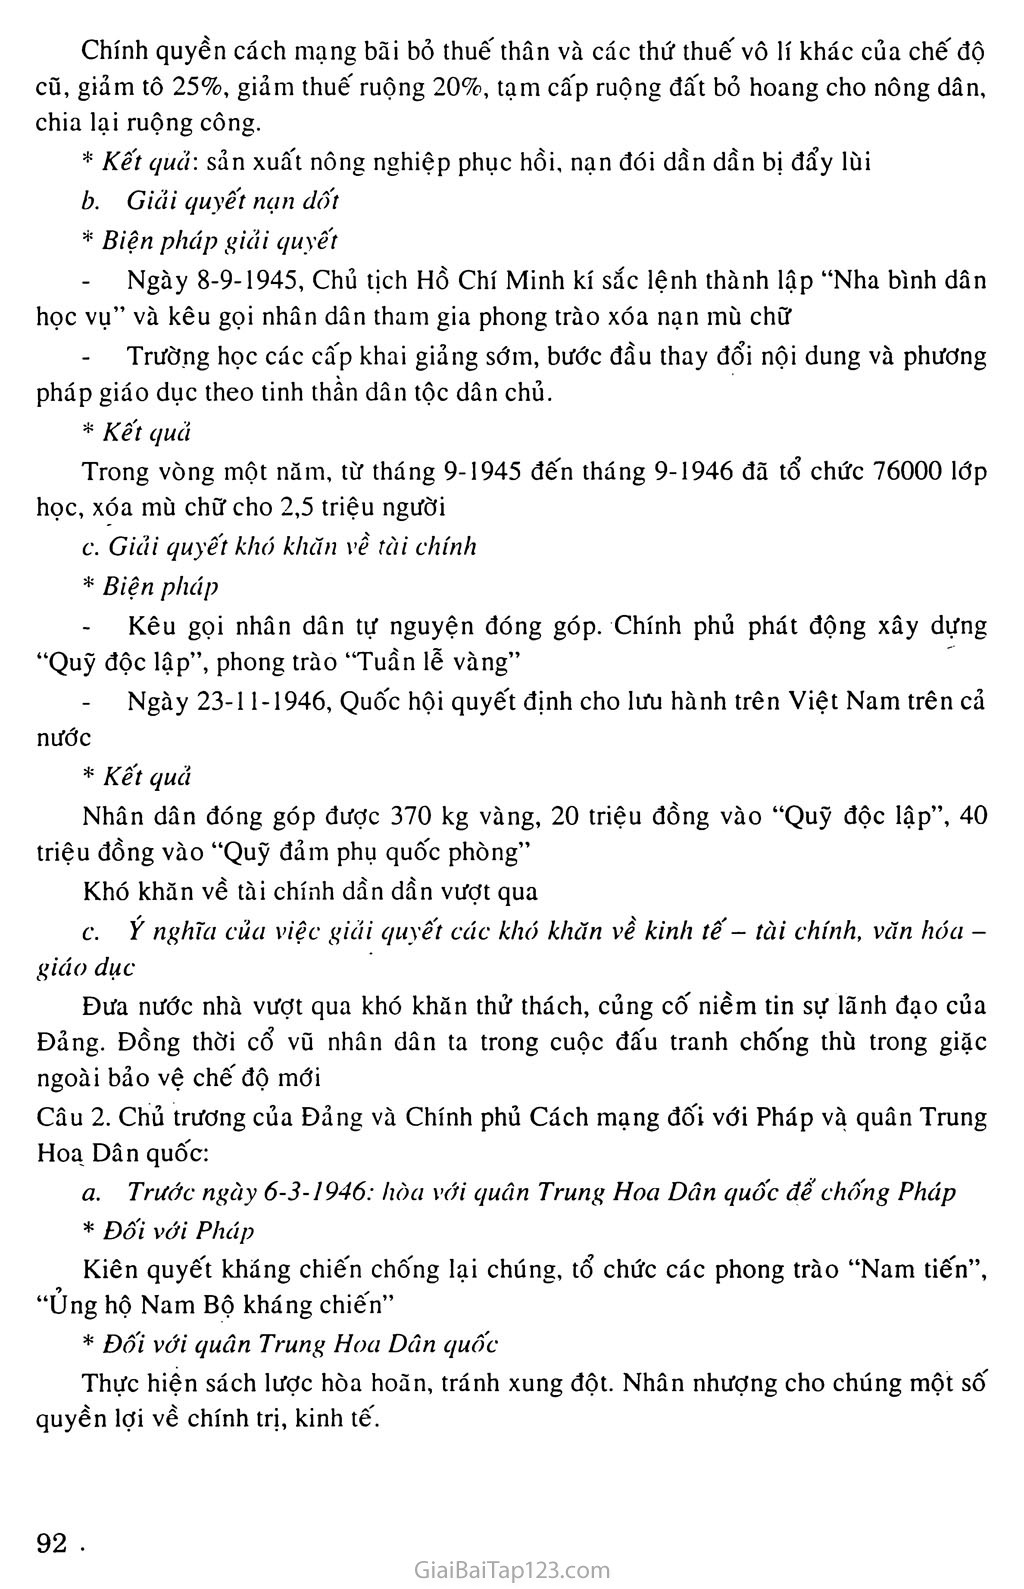 Bài 17: Nước Việt Nam Dân chủ Cộng hòa từ sau ngày  2 - 9 - 1945 đến trước ngày 19 - 2 -1946 trang 6